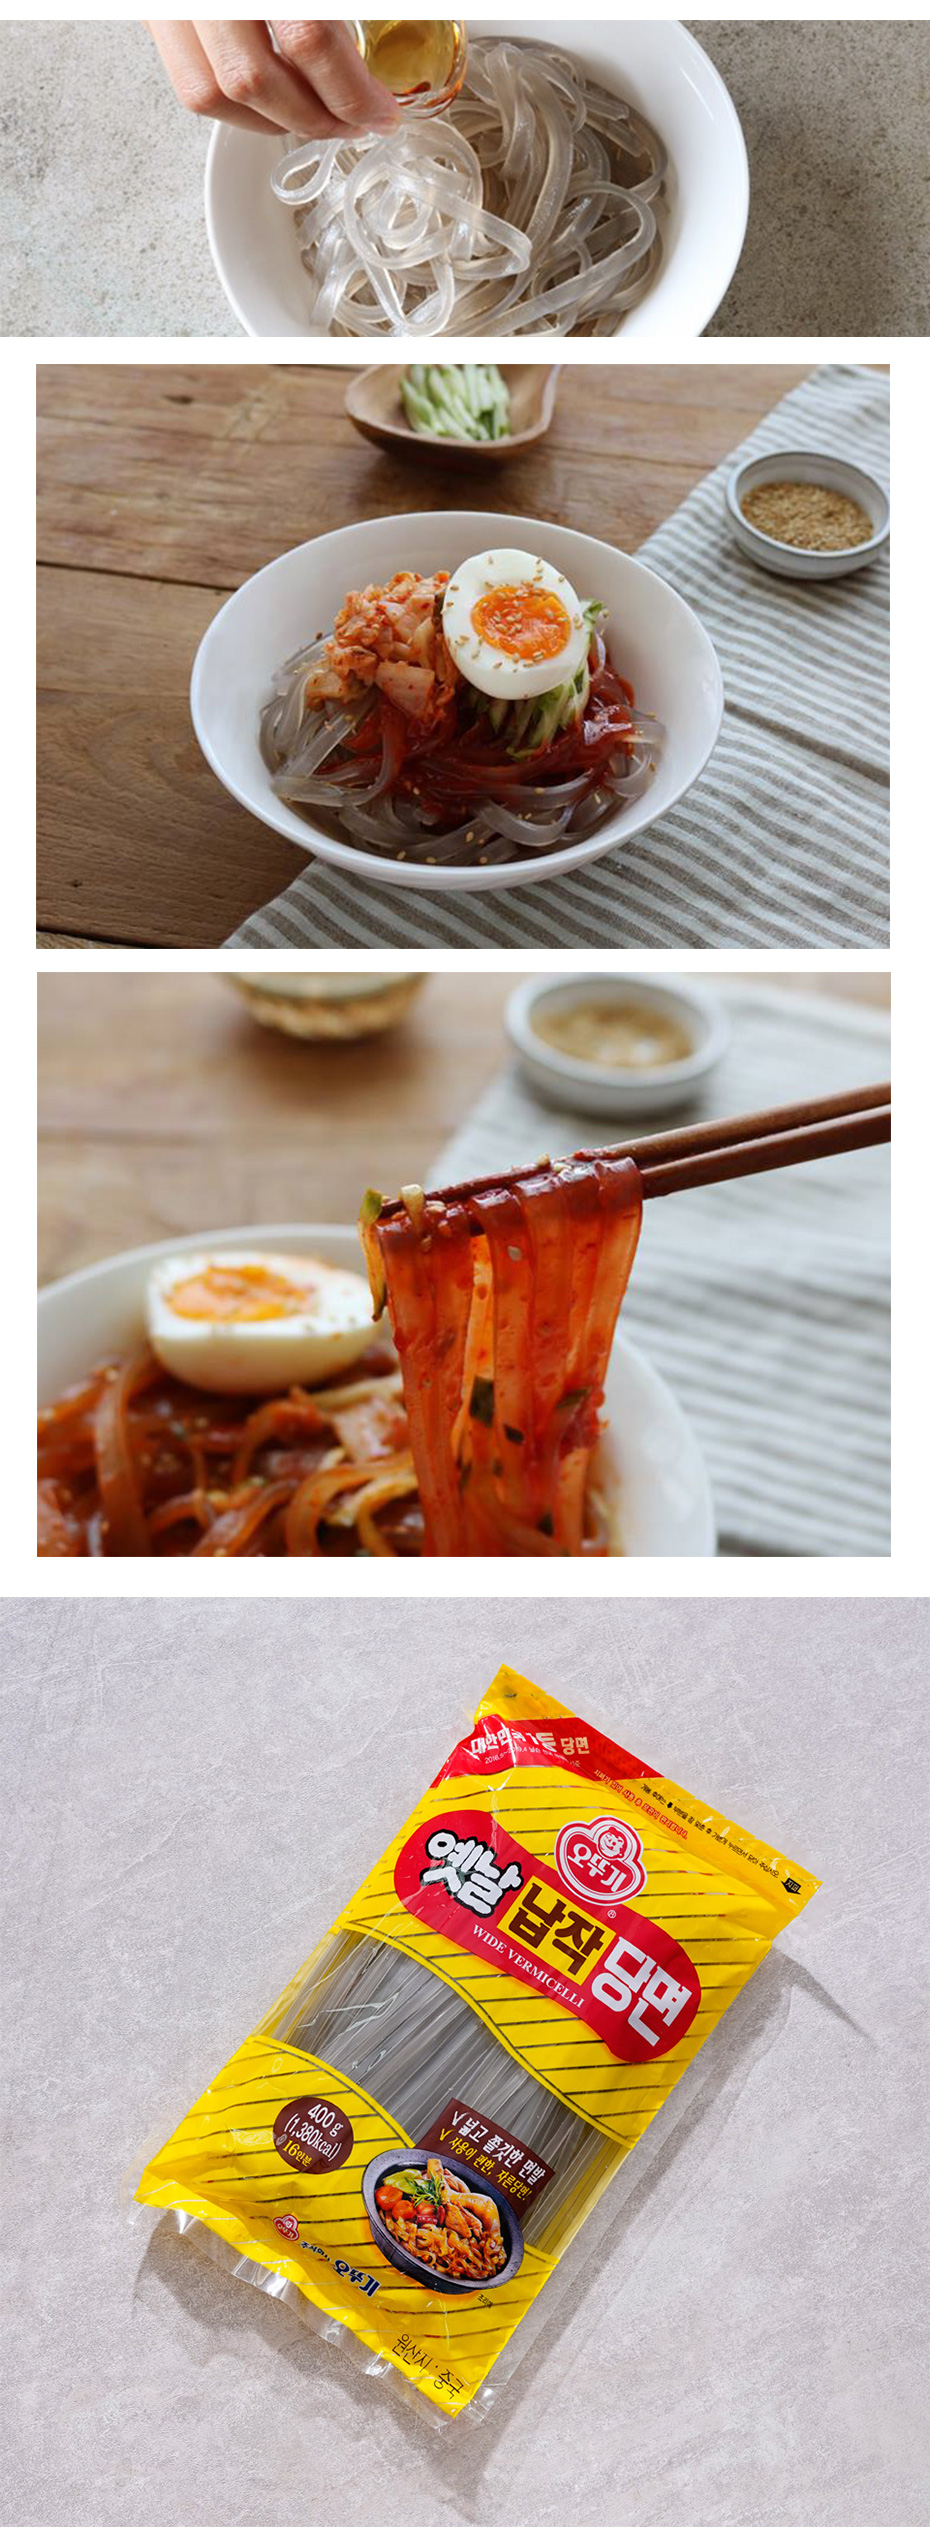 韓国春雨 平たい春雨 太い(平麺)唐麺